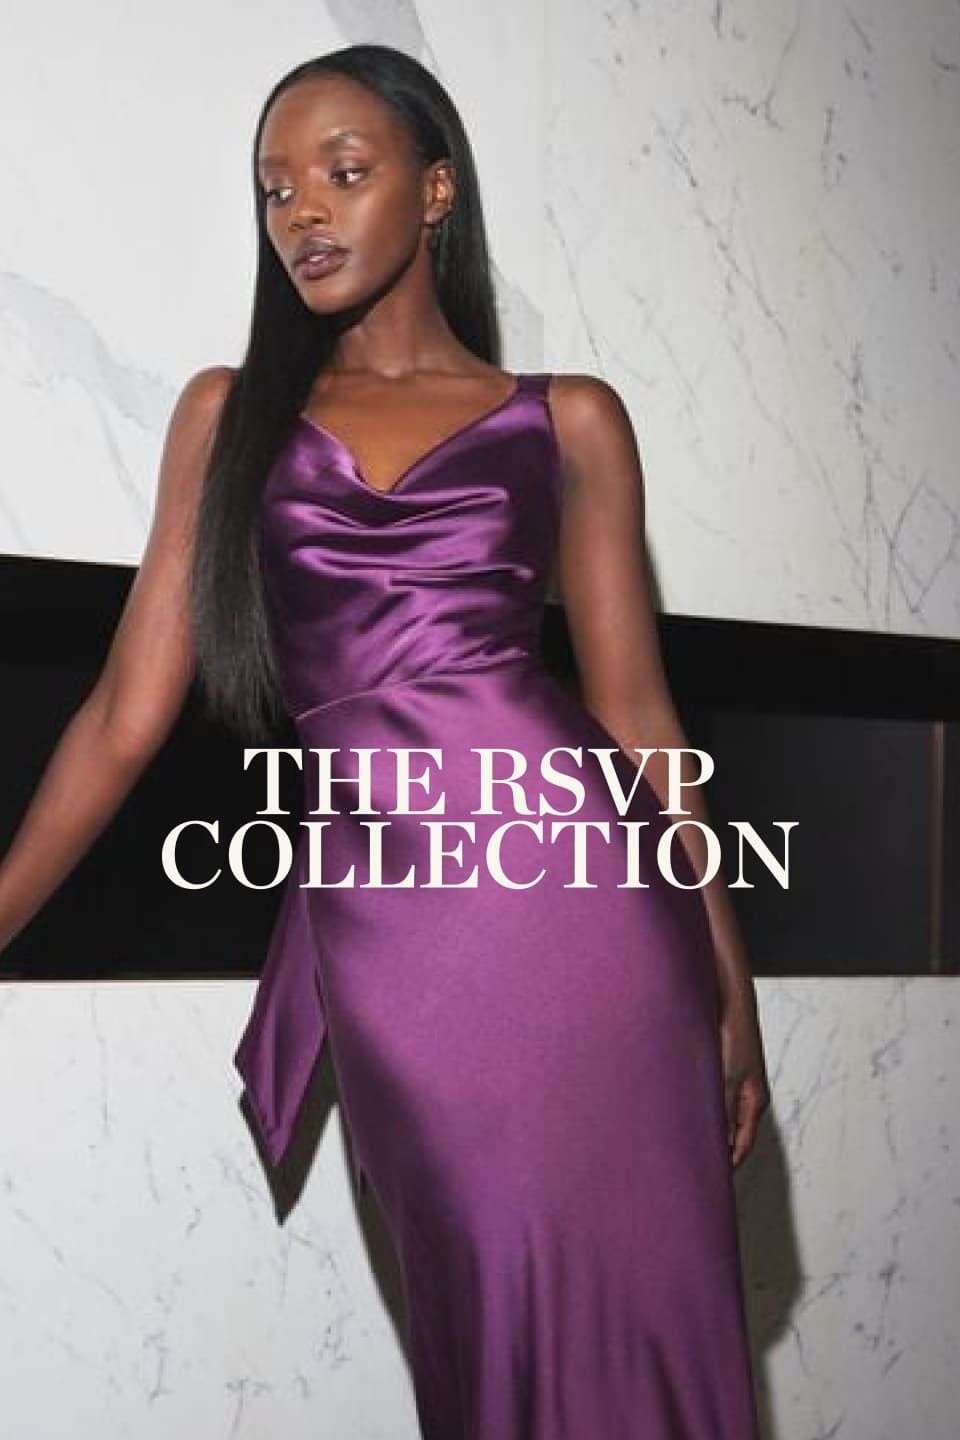 A model wear a maxi satin purple dress.